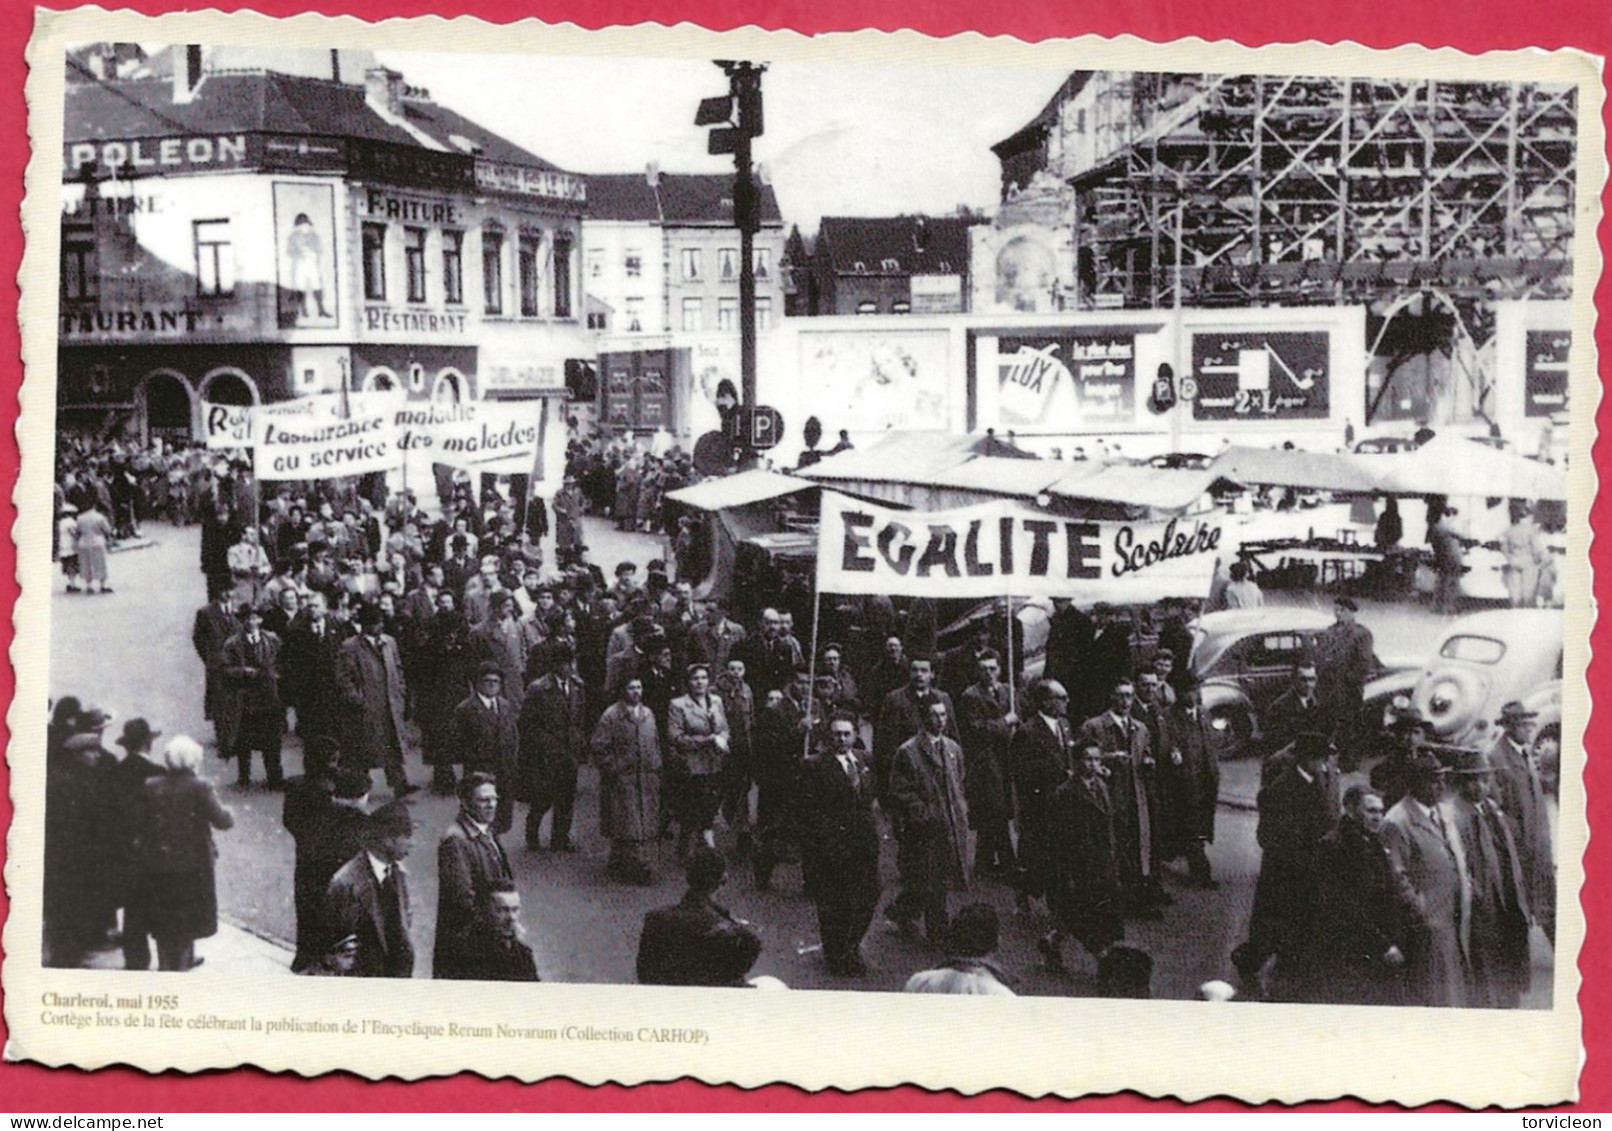 C.P. Charleroi   = MAI 1955  :  Cortège Lors  De La Fête Célébrant La Publication De  L' Encyclique RERUM  NOVARUM - Charleroi